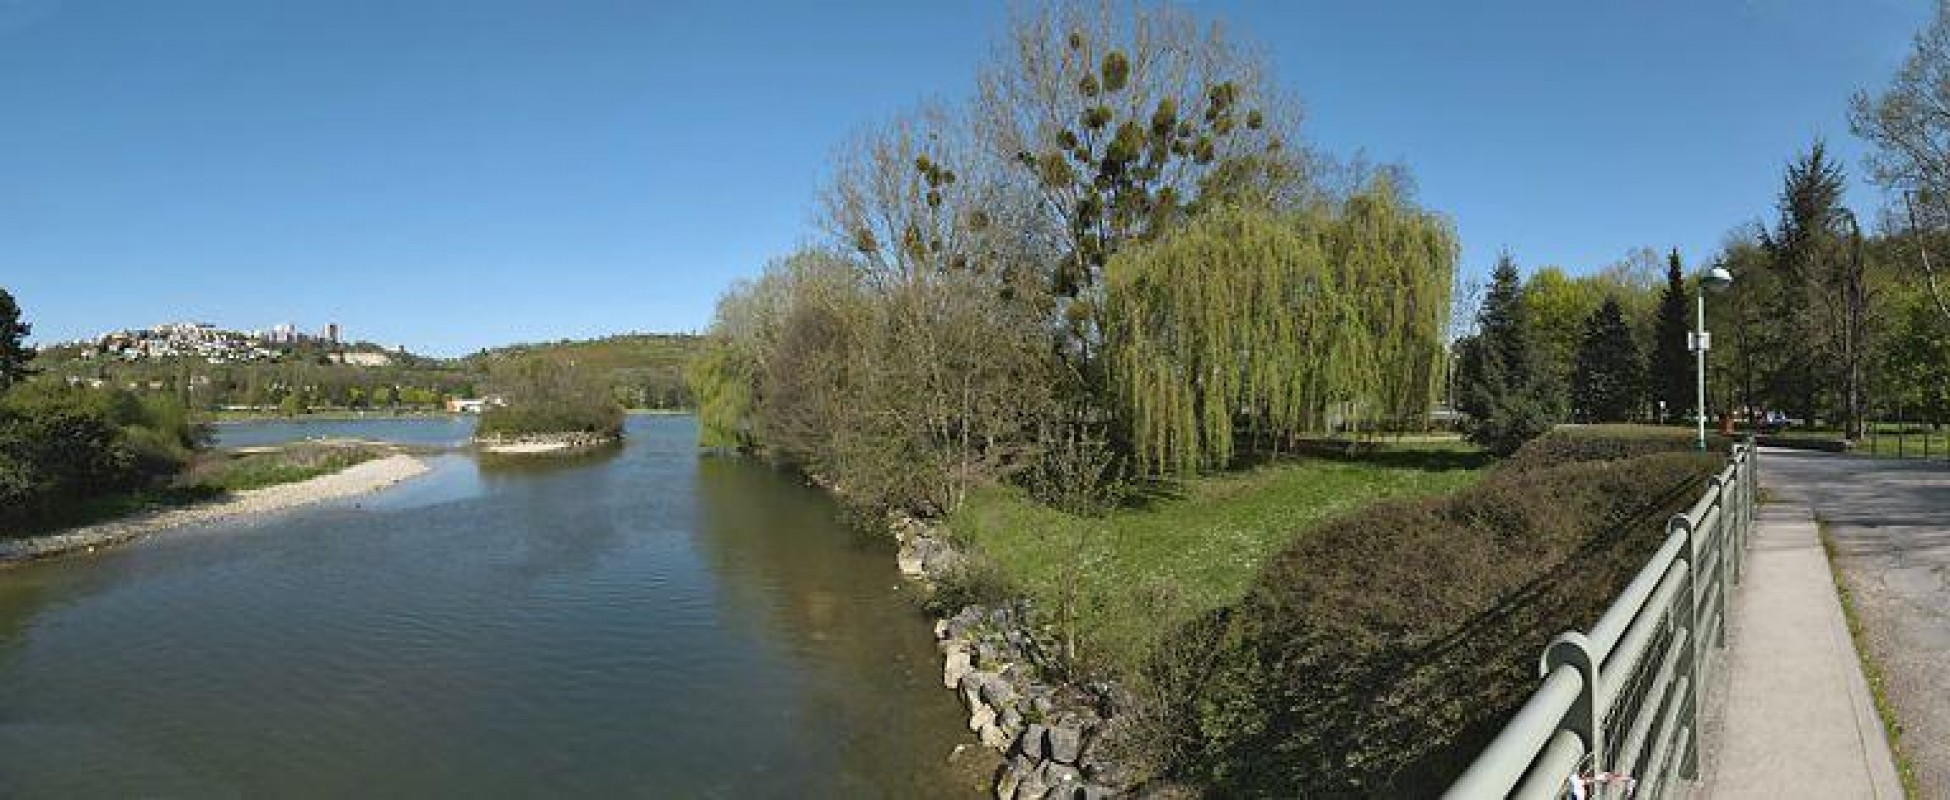 Dijon : deux hommes agressés au lac Kir, l'assaillant hurlant « Mort aux pédérastes »